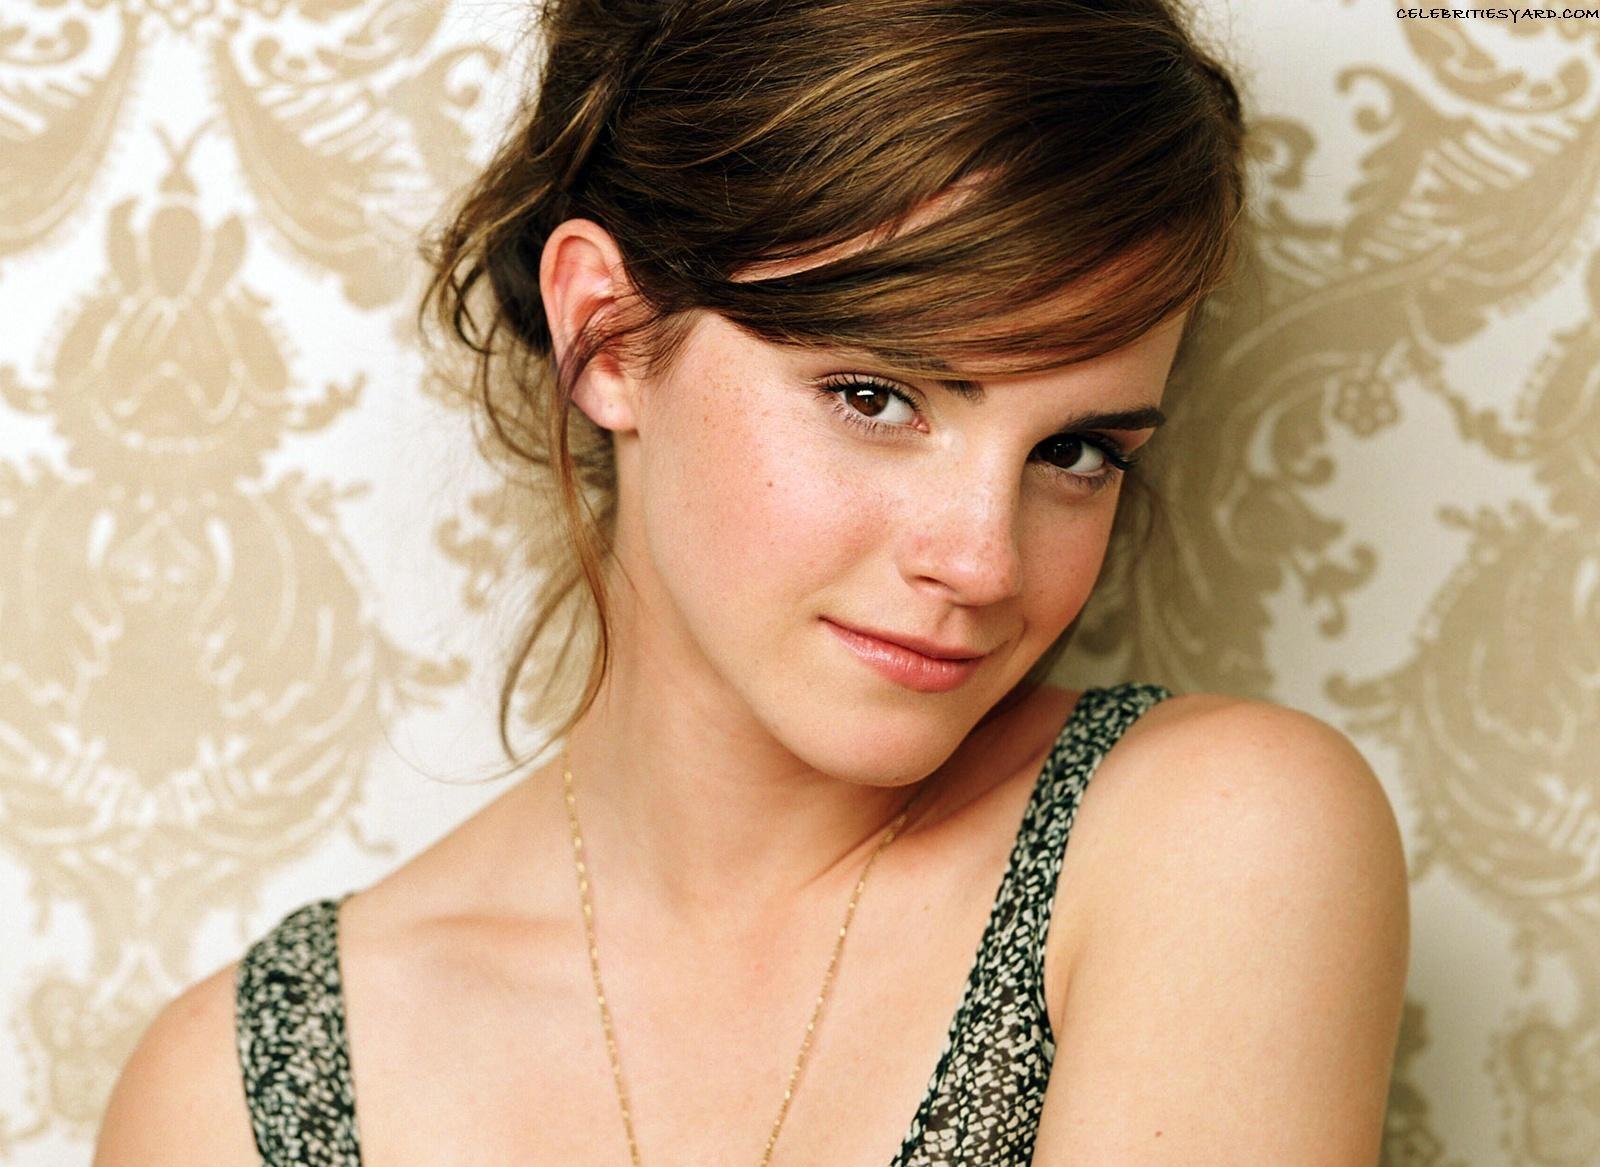 Wallpaper For > Cute Emma Watson Wallpaper 2009